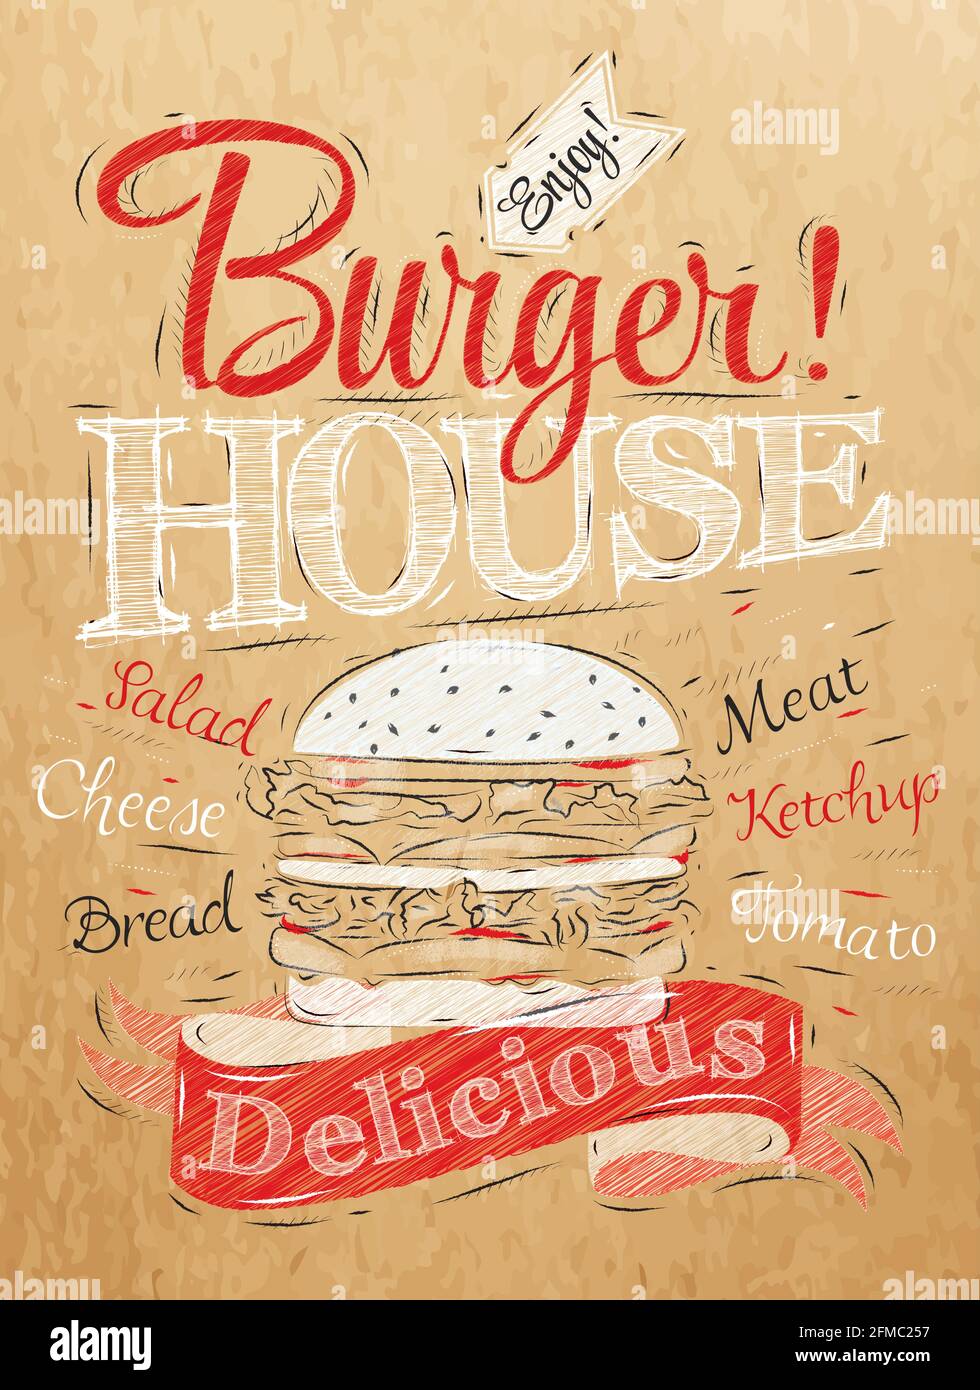 Posterbeschriftung Burger House mit einem Hamburger bemalt und Aufschriften stilisierte Zeichnung auf Kraftpapier aus rot, weiß, schwarz. Stock Vektor